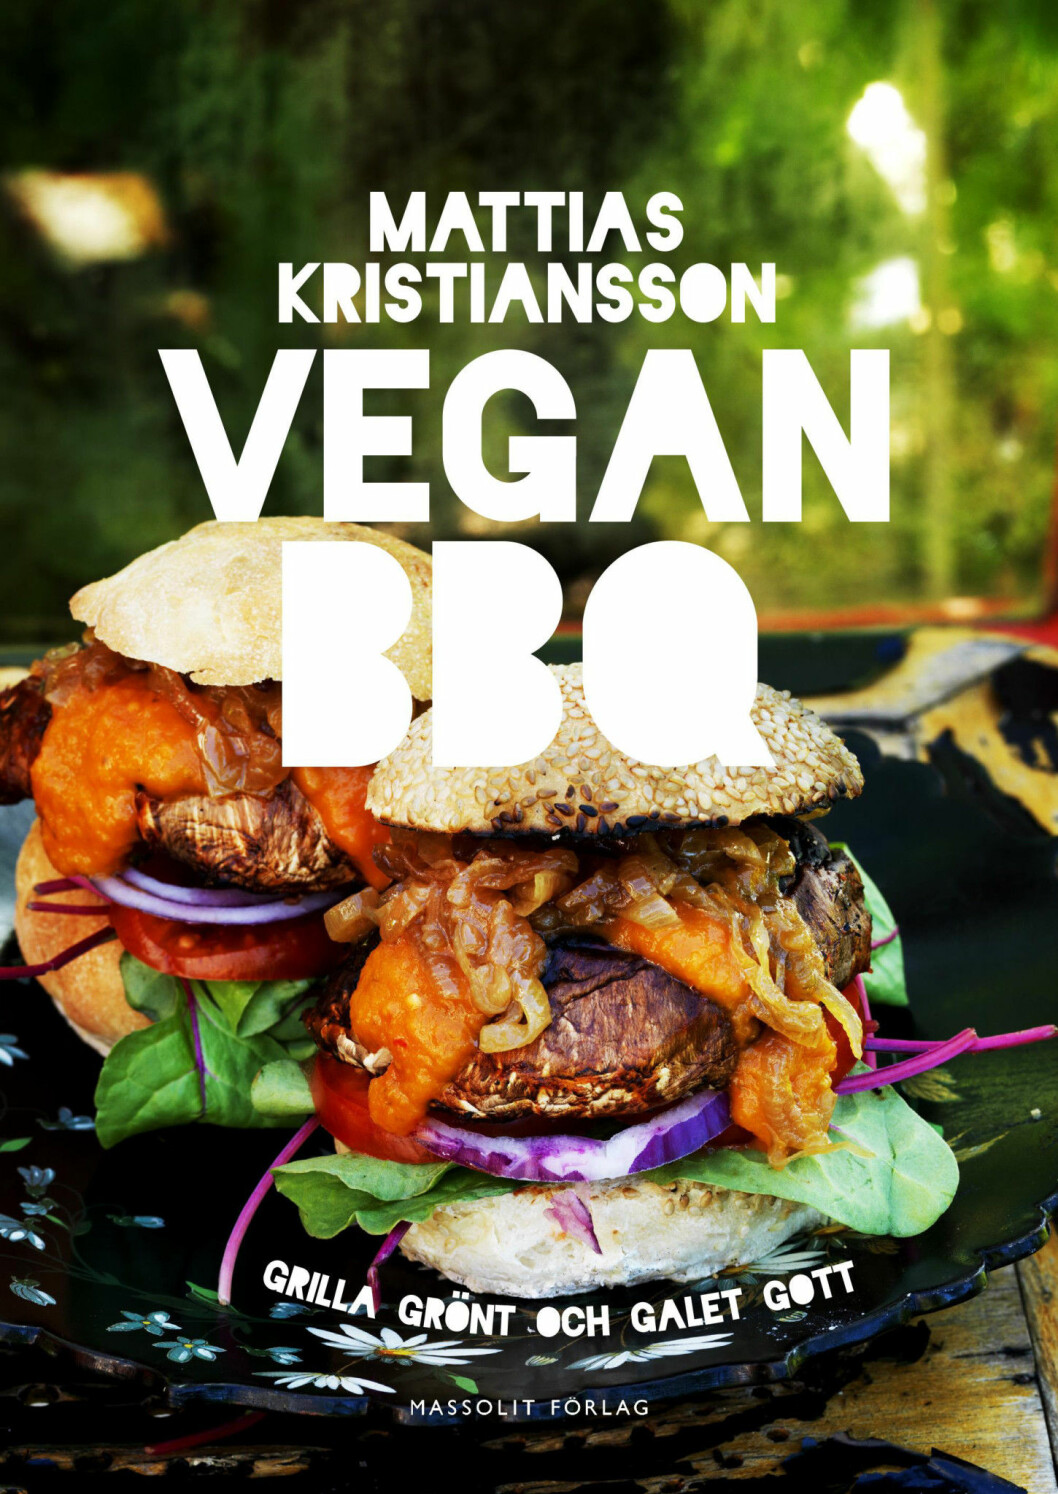 Det här ljuvliga recept från Mattias Kristianssons senaste bok Vegan BBQ. 